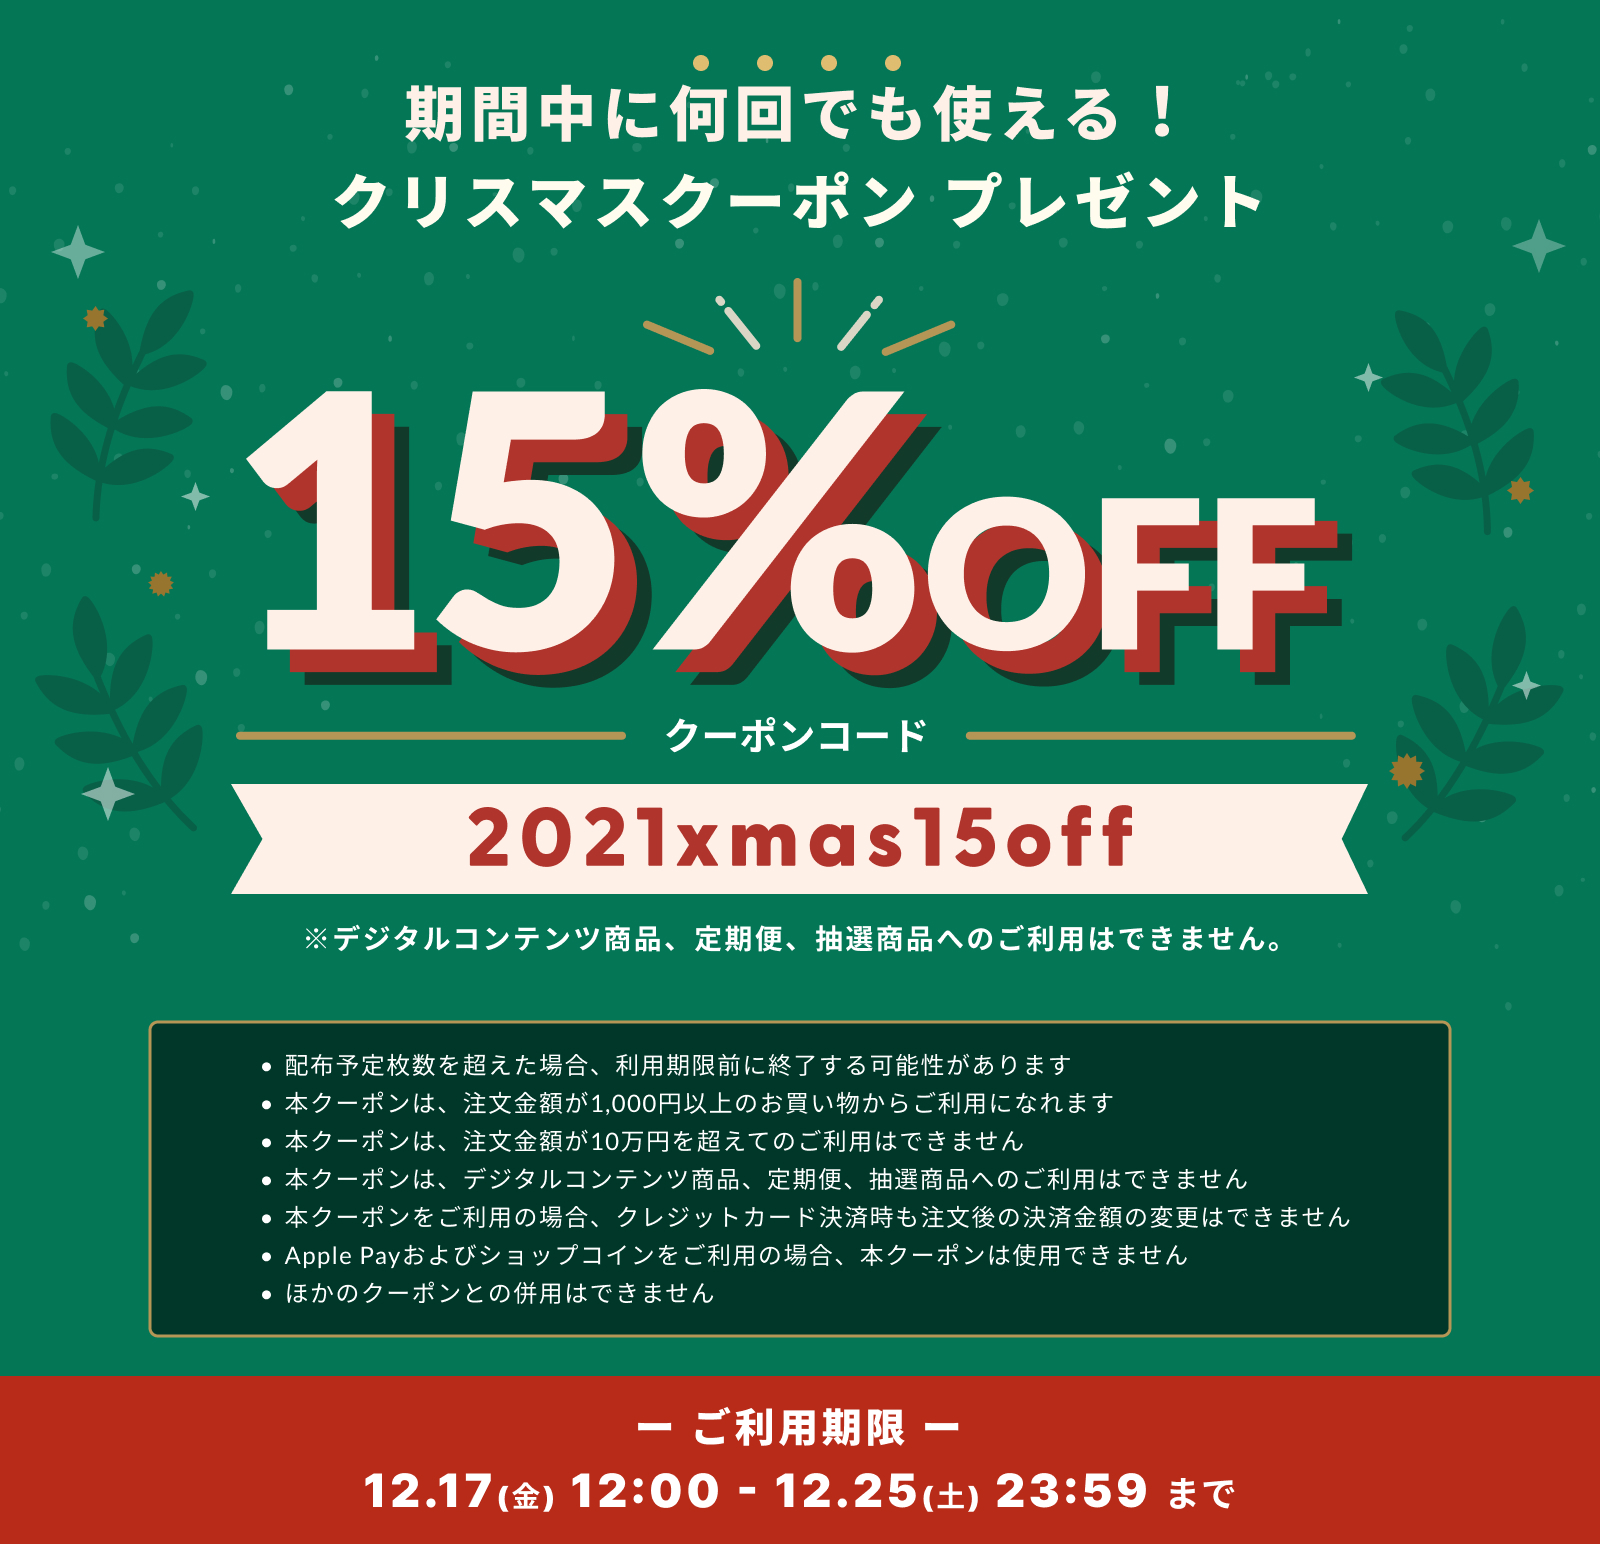 ☆クリスマスクーポンキャンペーン☆ お得な15%OFFクーポンをGET♪